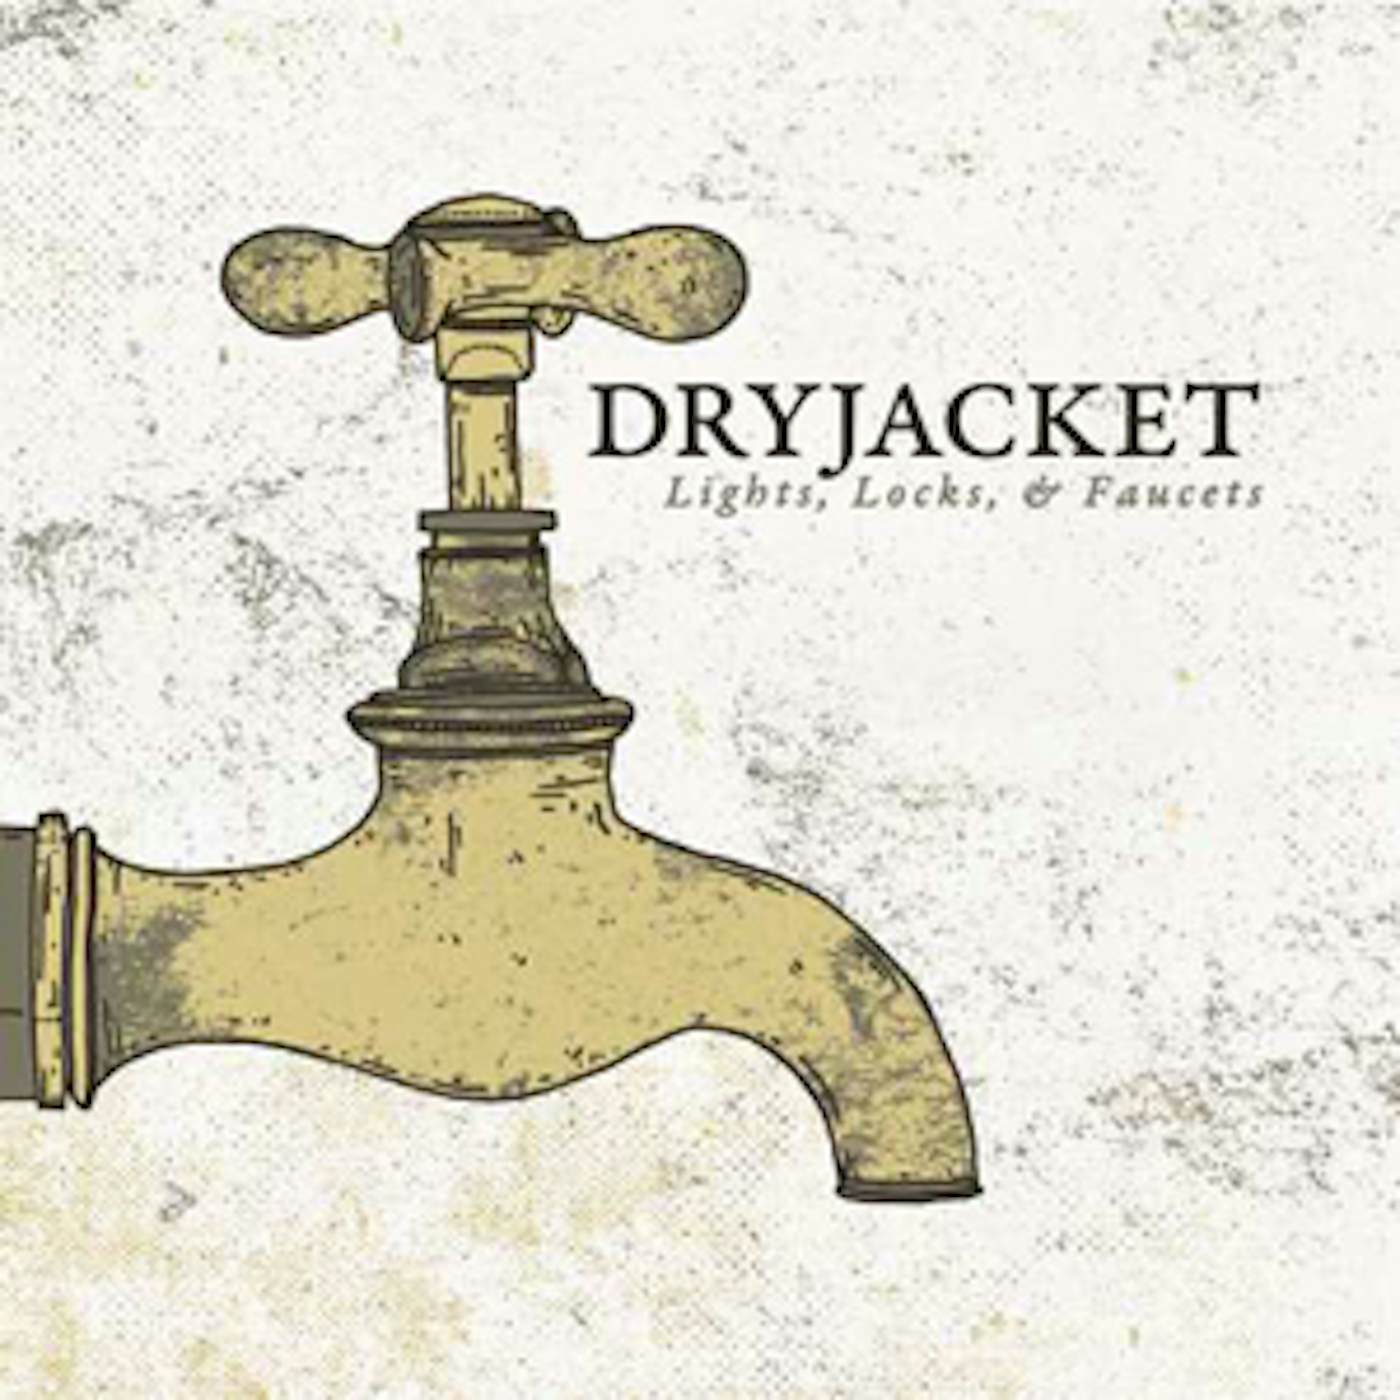 Dryjacket LIGHT LOCKS & FAUCETS Vinyl Record